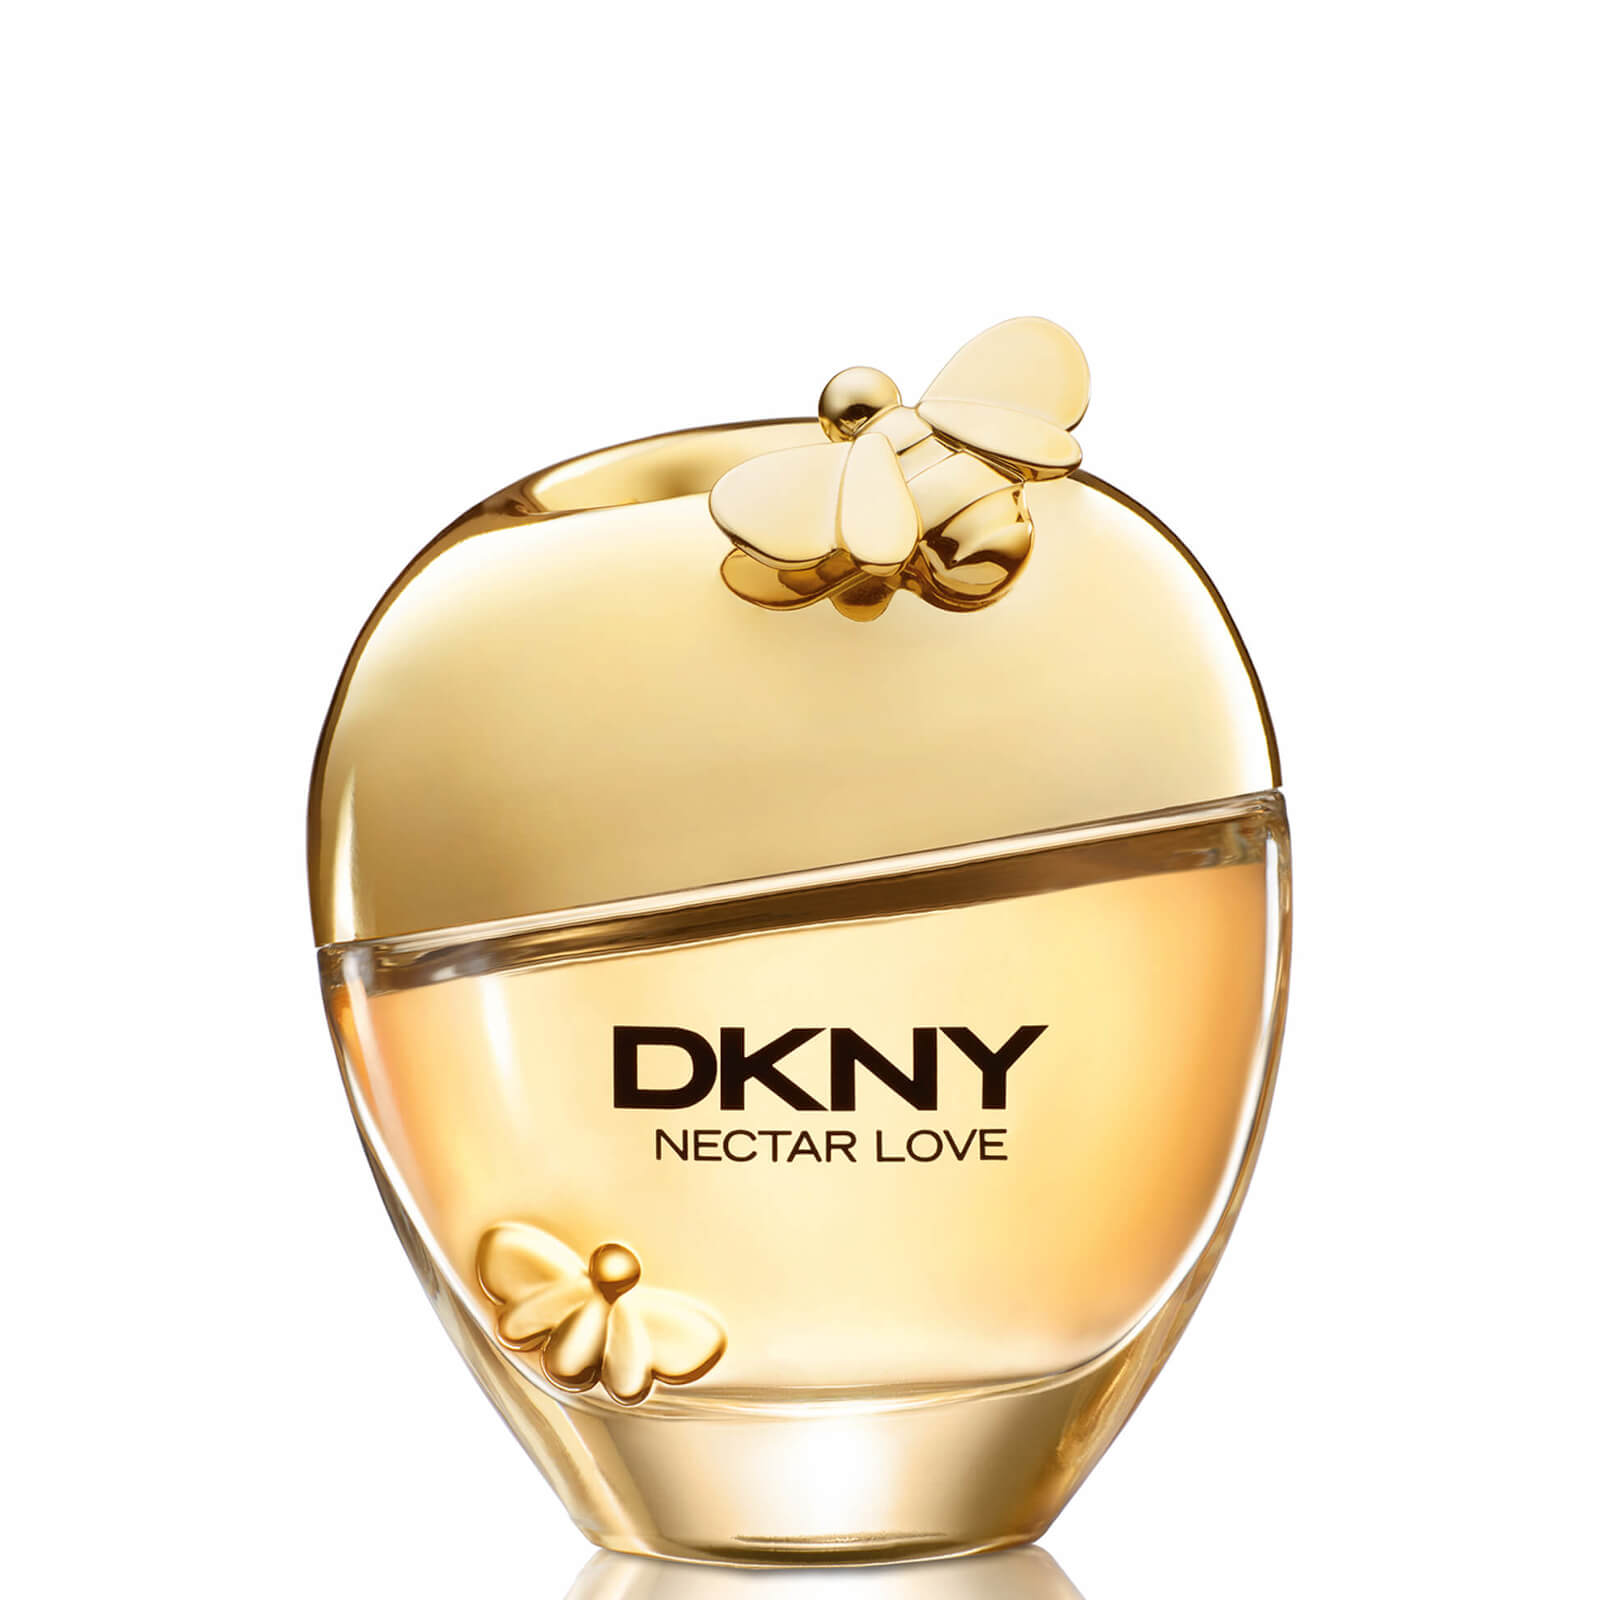 Photos - Women's Fragrance DKNY Nectar Love Eau de Parfum 50ml 5NR9010000 